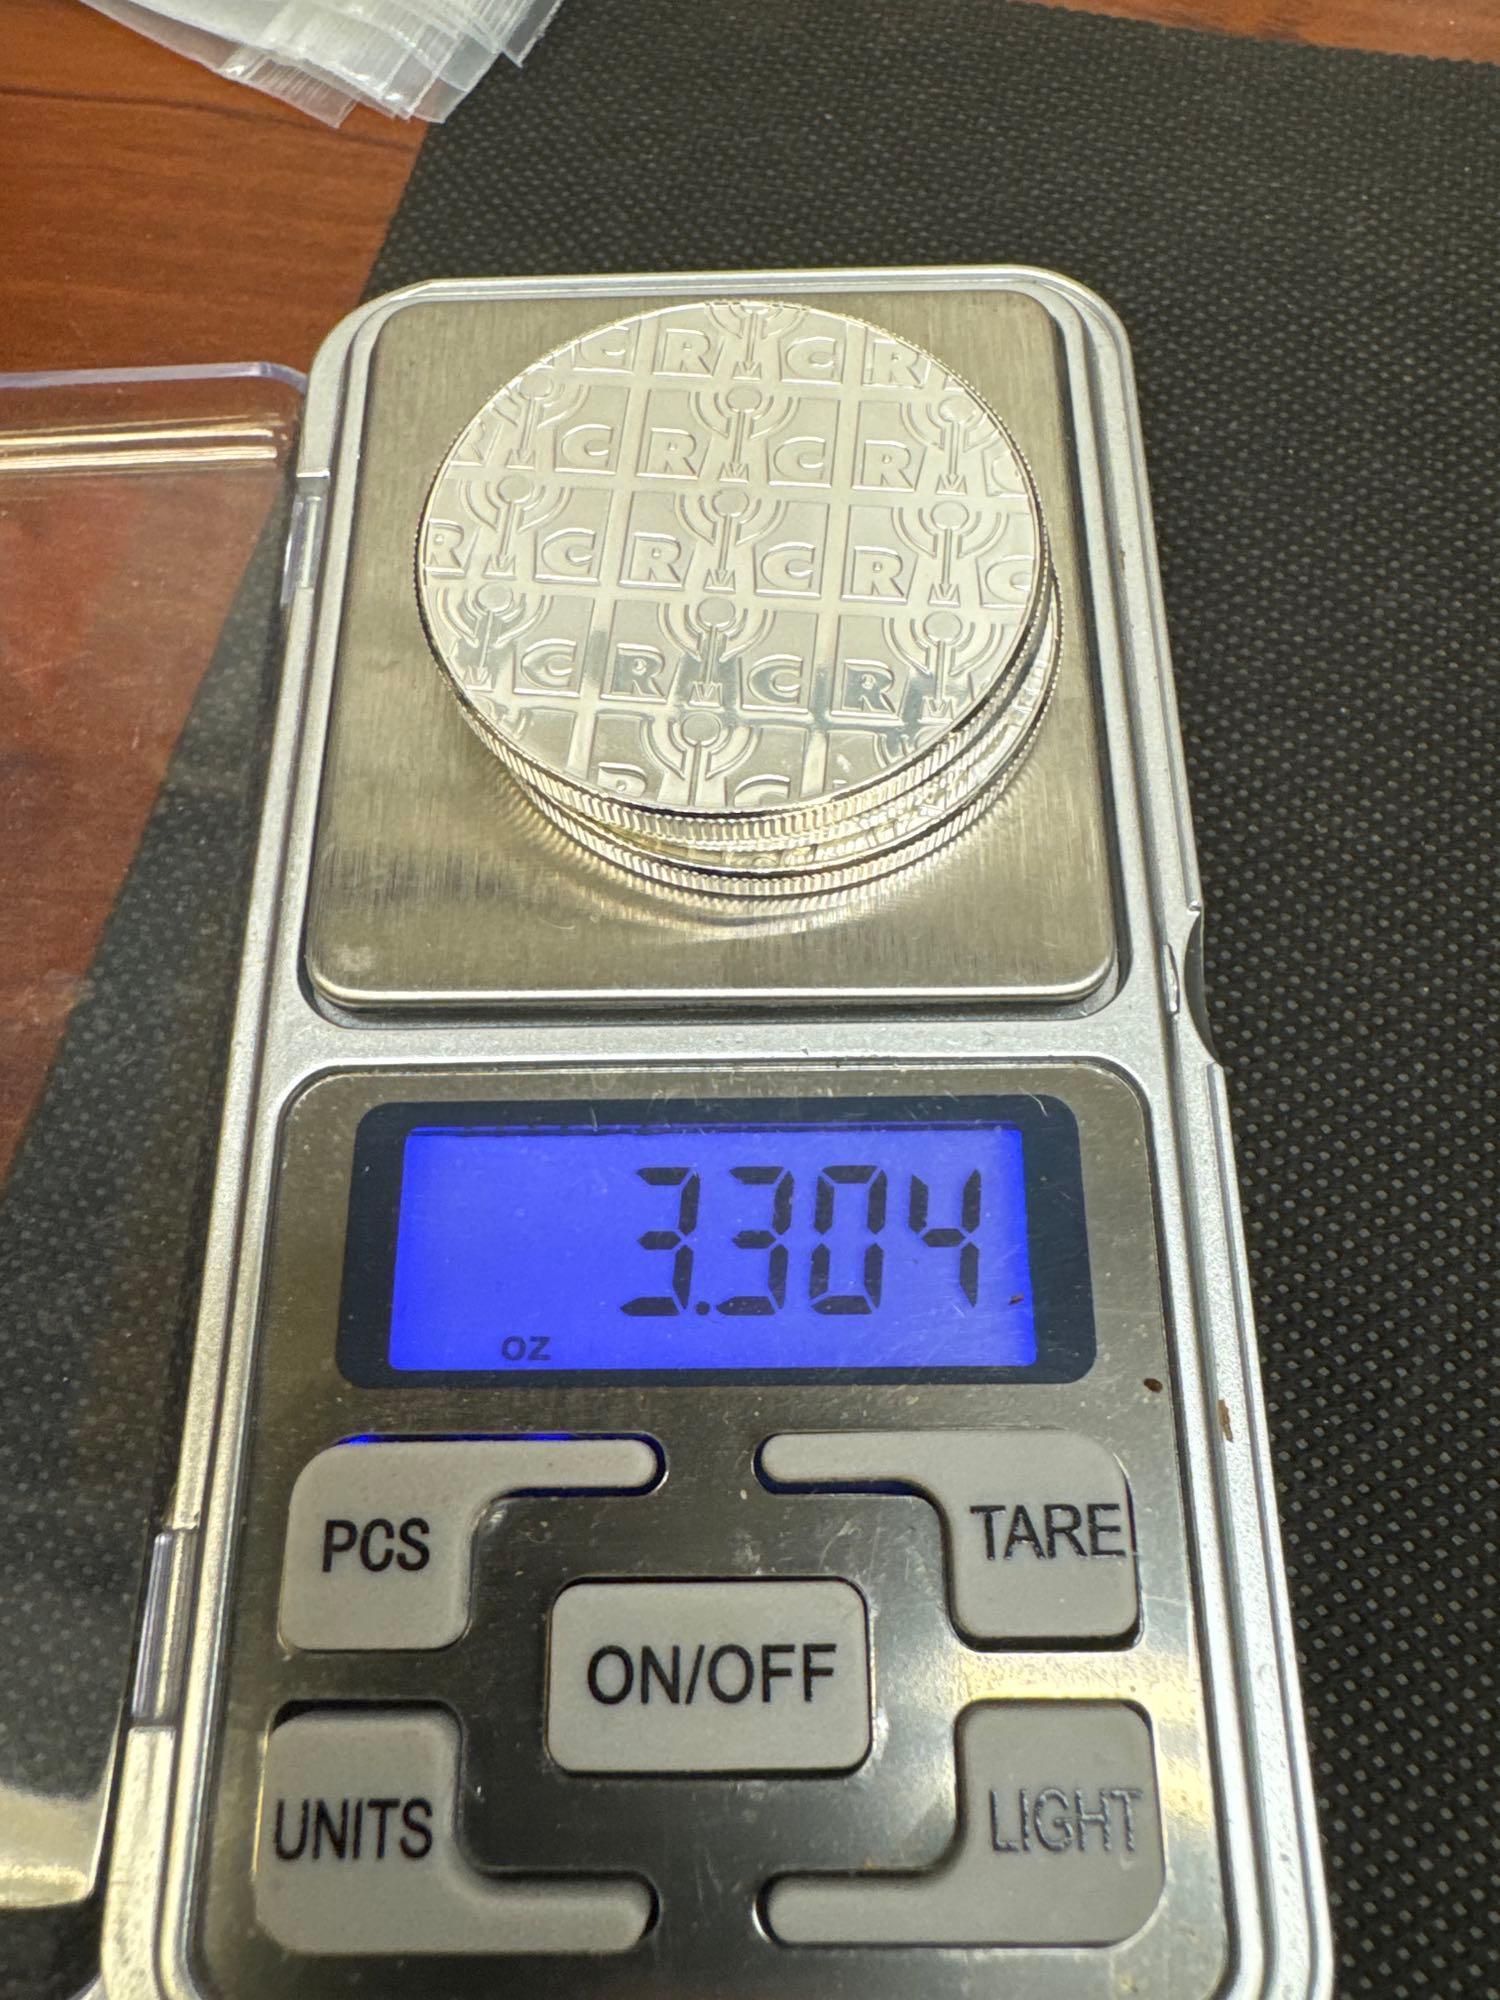 3x RMC 1 Troy Ounce .999 Fine Silver Bullion Coins 3.30 Oz